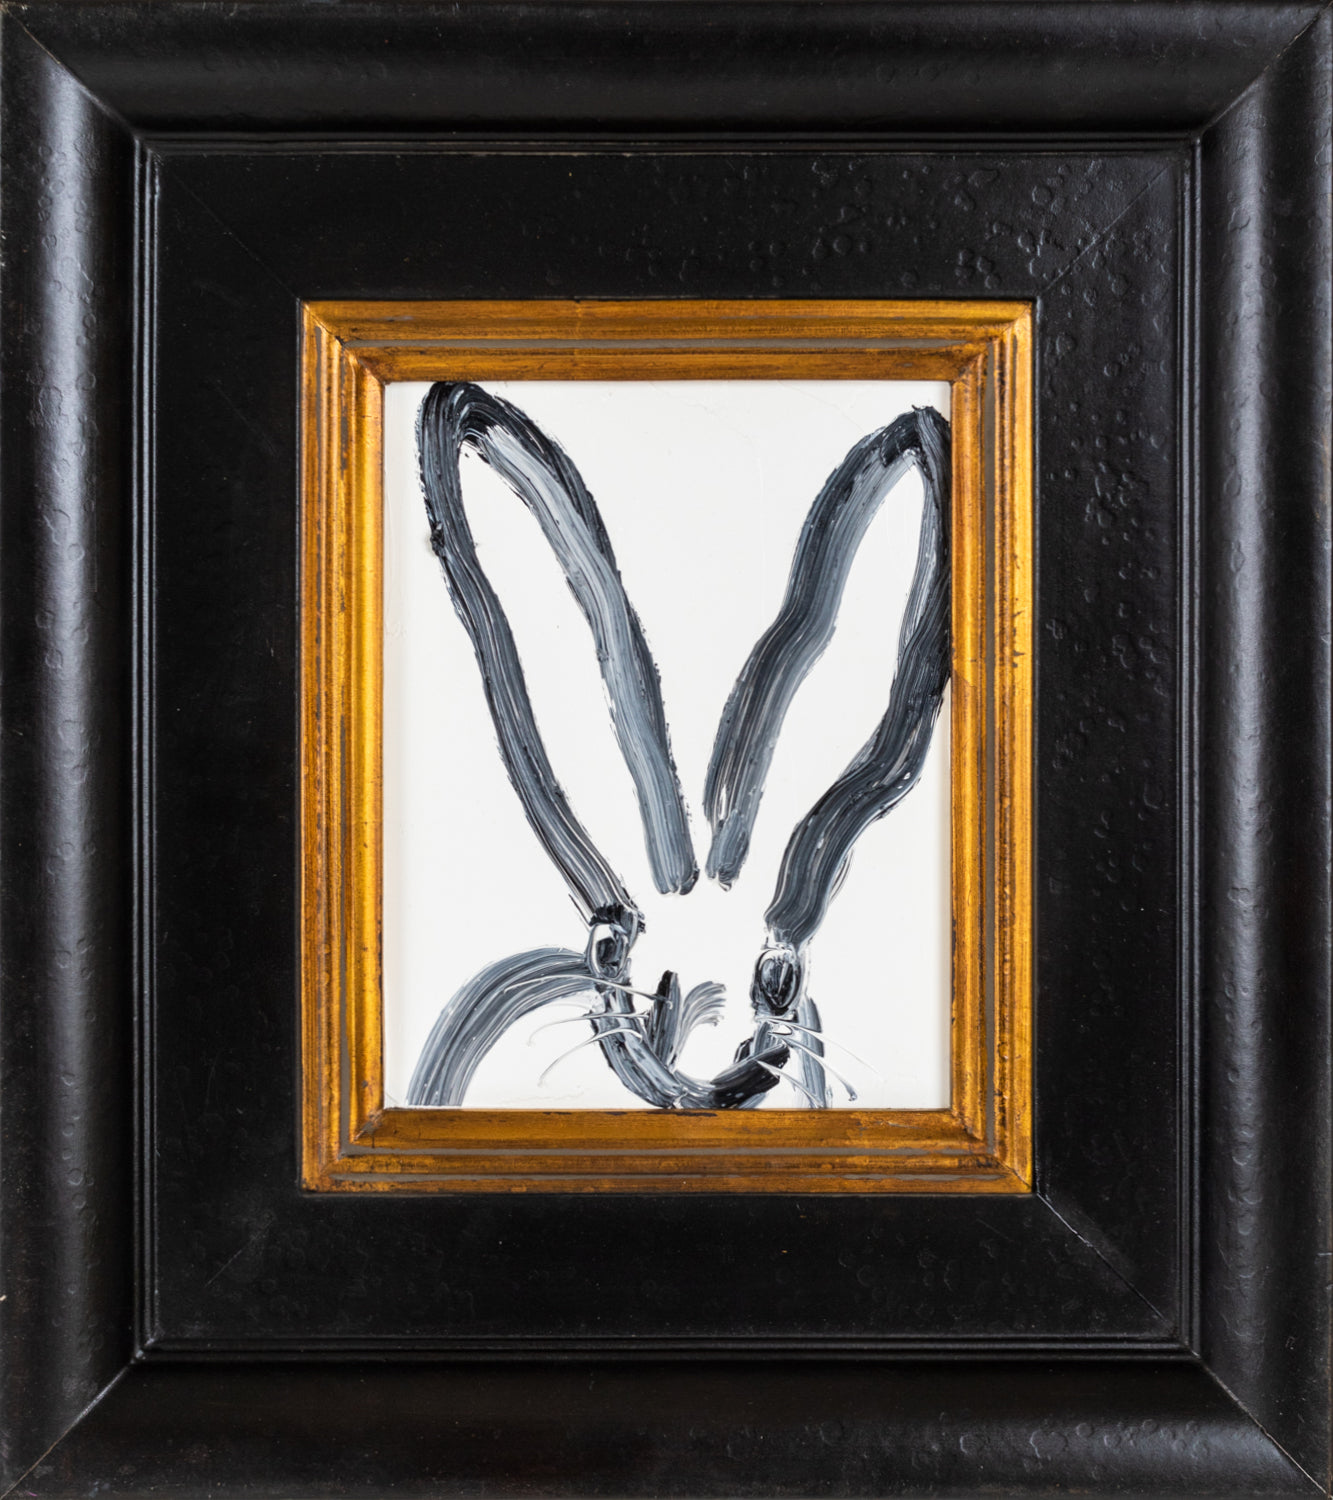 Hunt Slonem, Untitled (White Bunny, Black Frame), 2019, Oil on wood, 10 x 8 inches, Hunt Slonem bunny